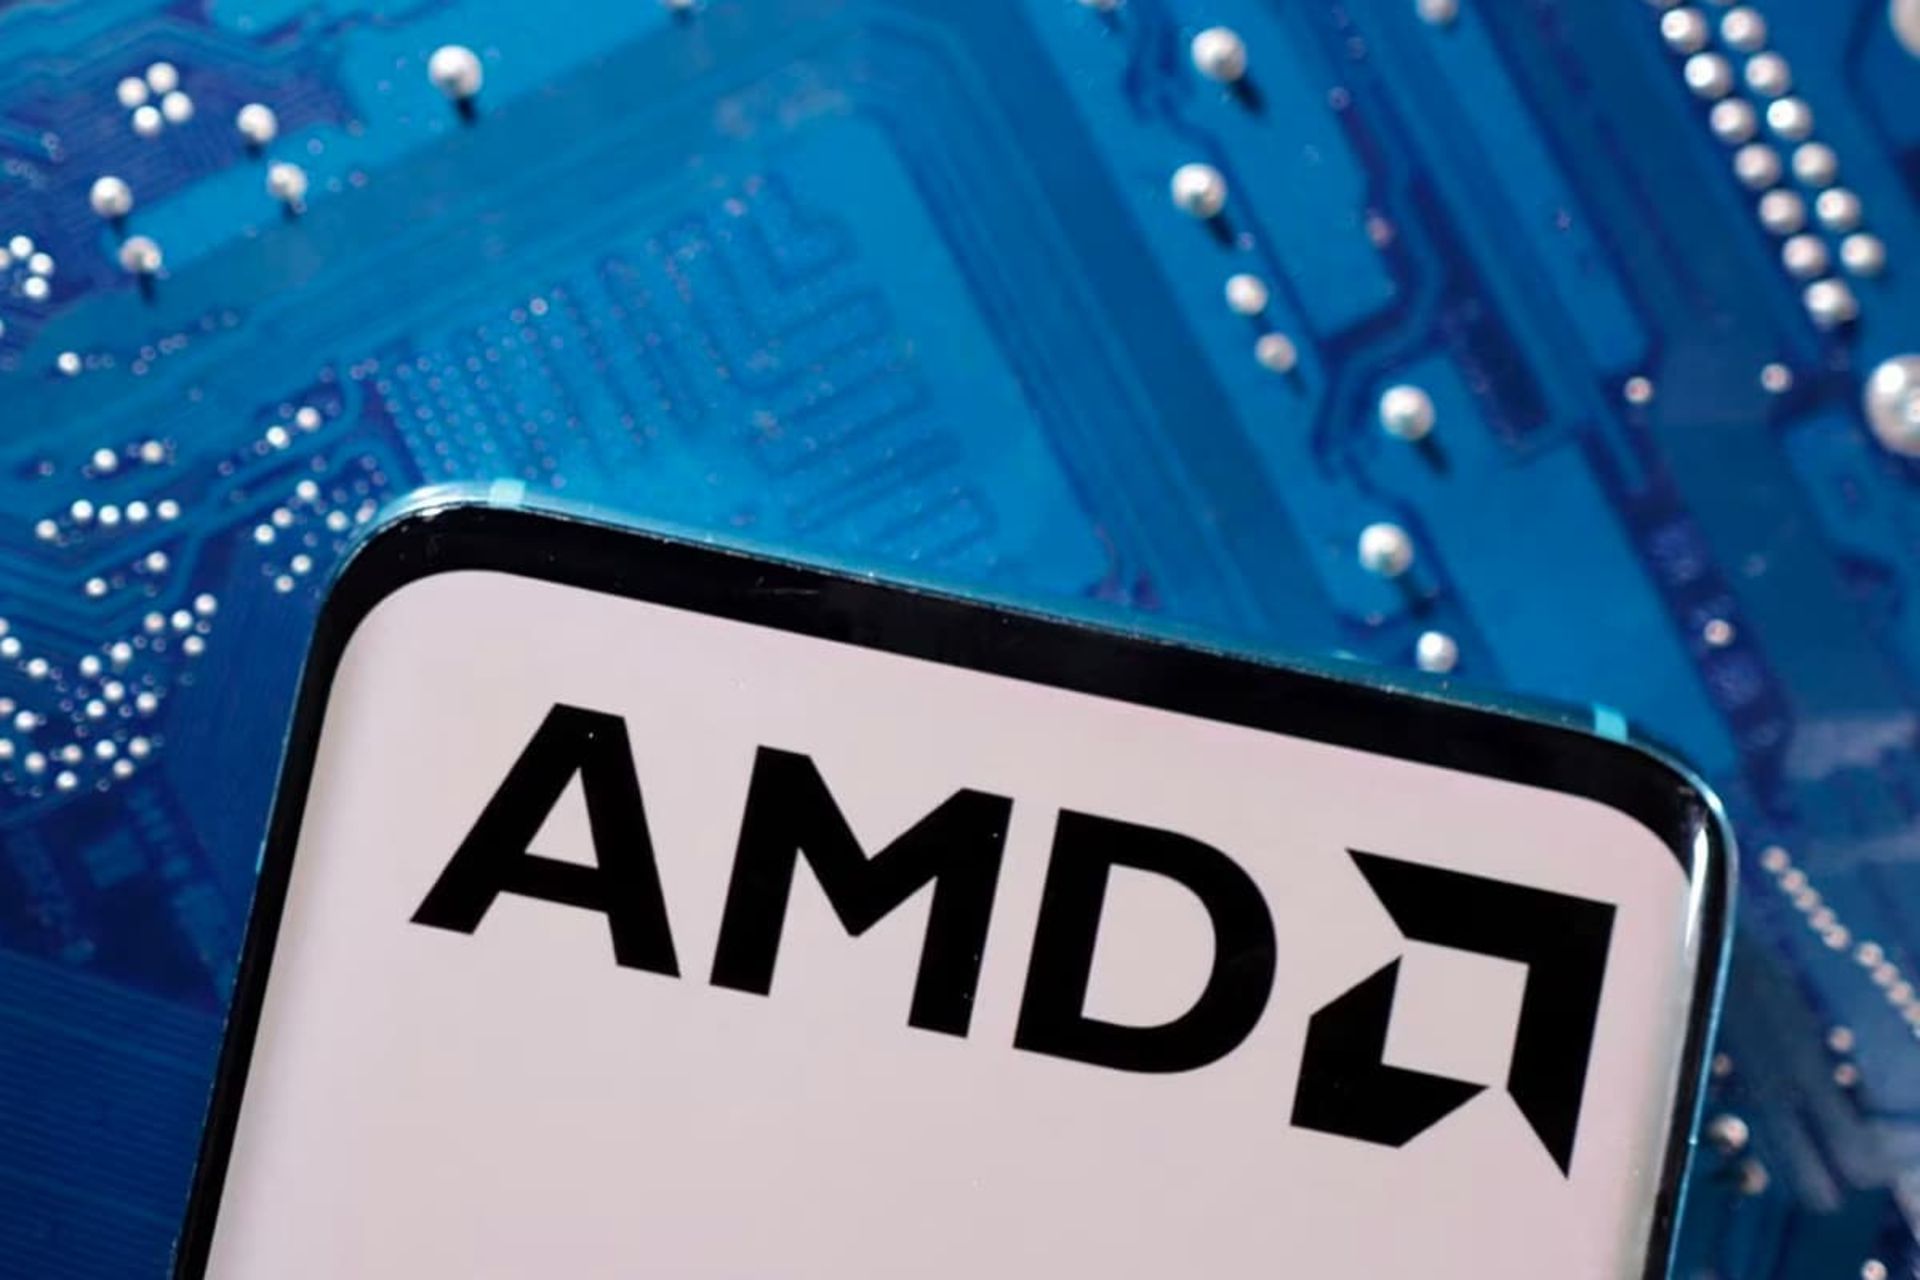 لوگو ای ام دی / AMD روی نمایشگر موبایل در بالای تراشه آبی